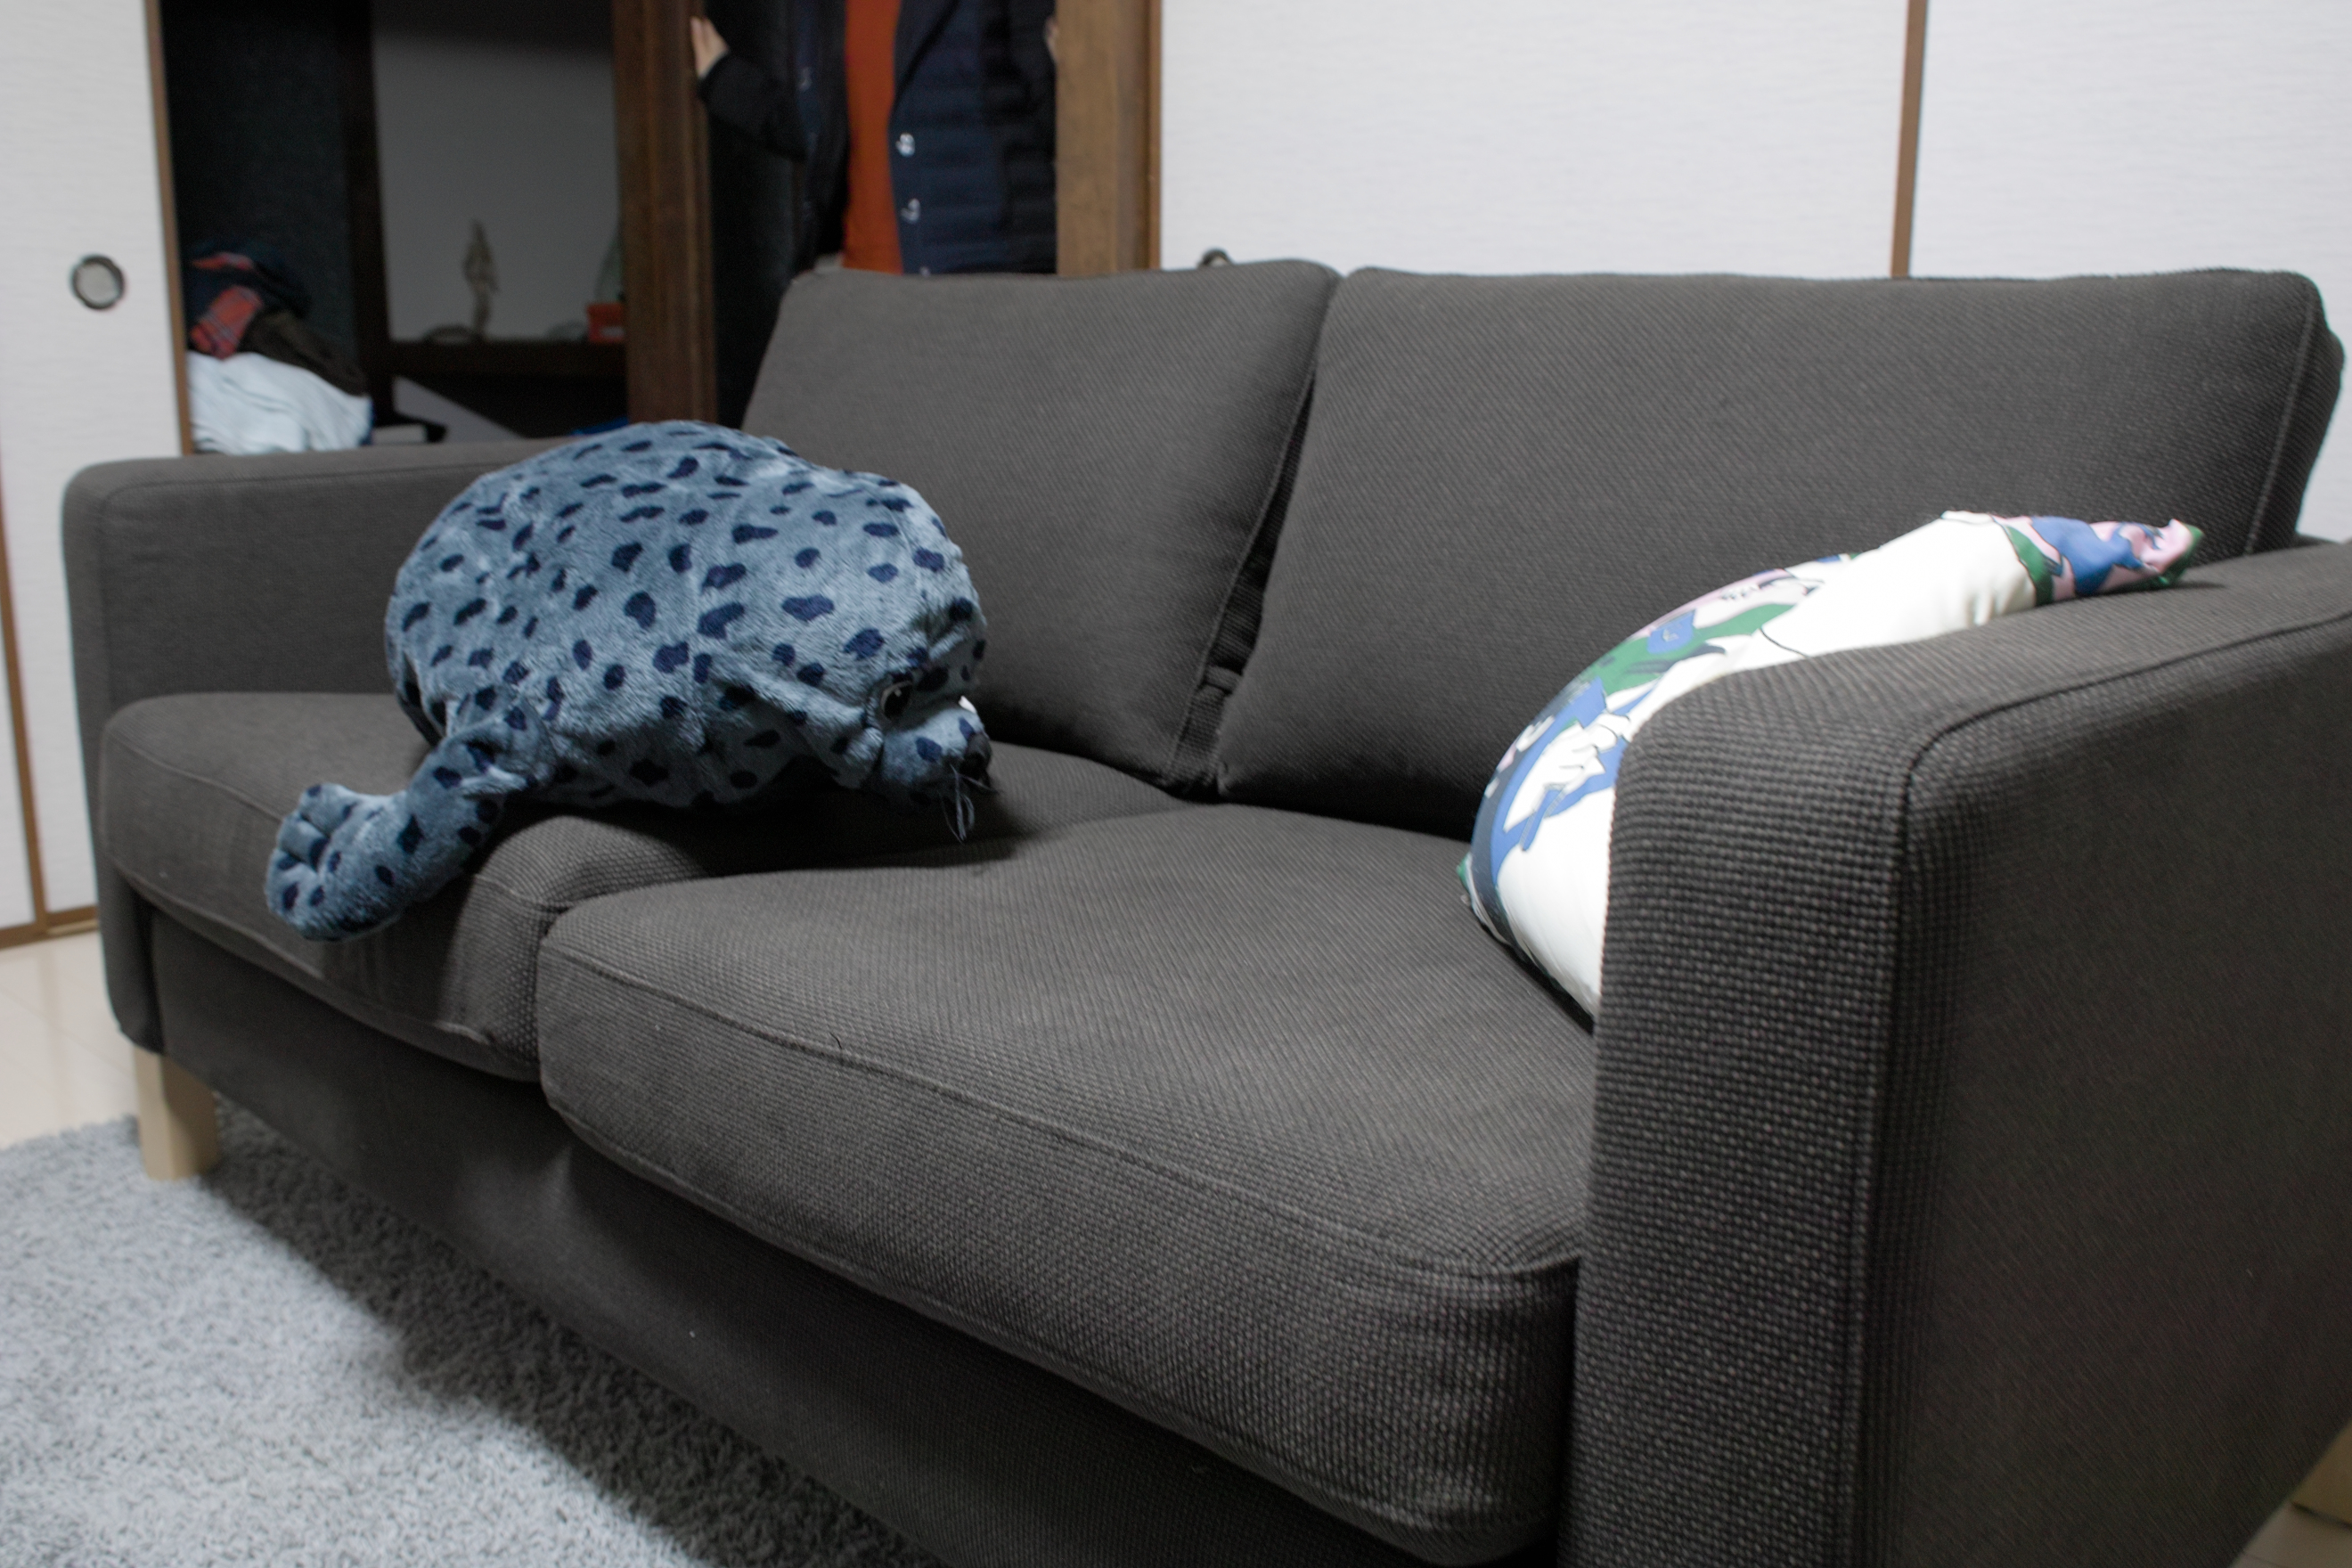 IKEAで買ったソファを組み立ててみた。 – モンキーレンチ